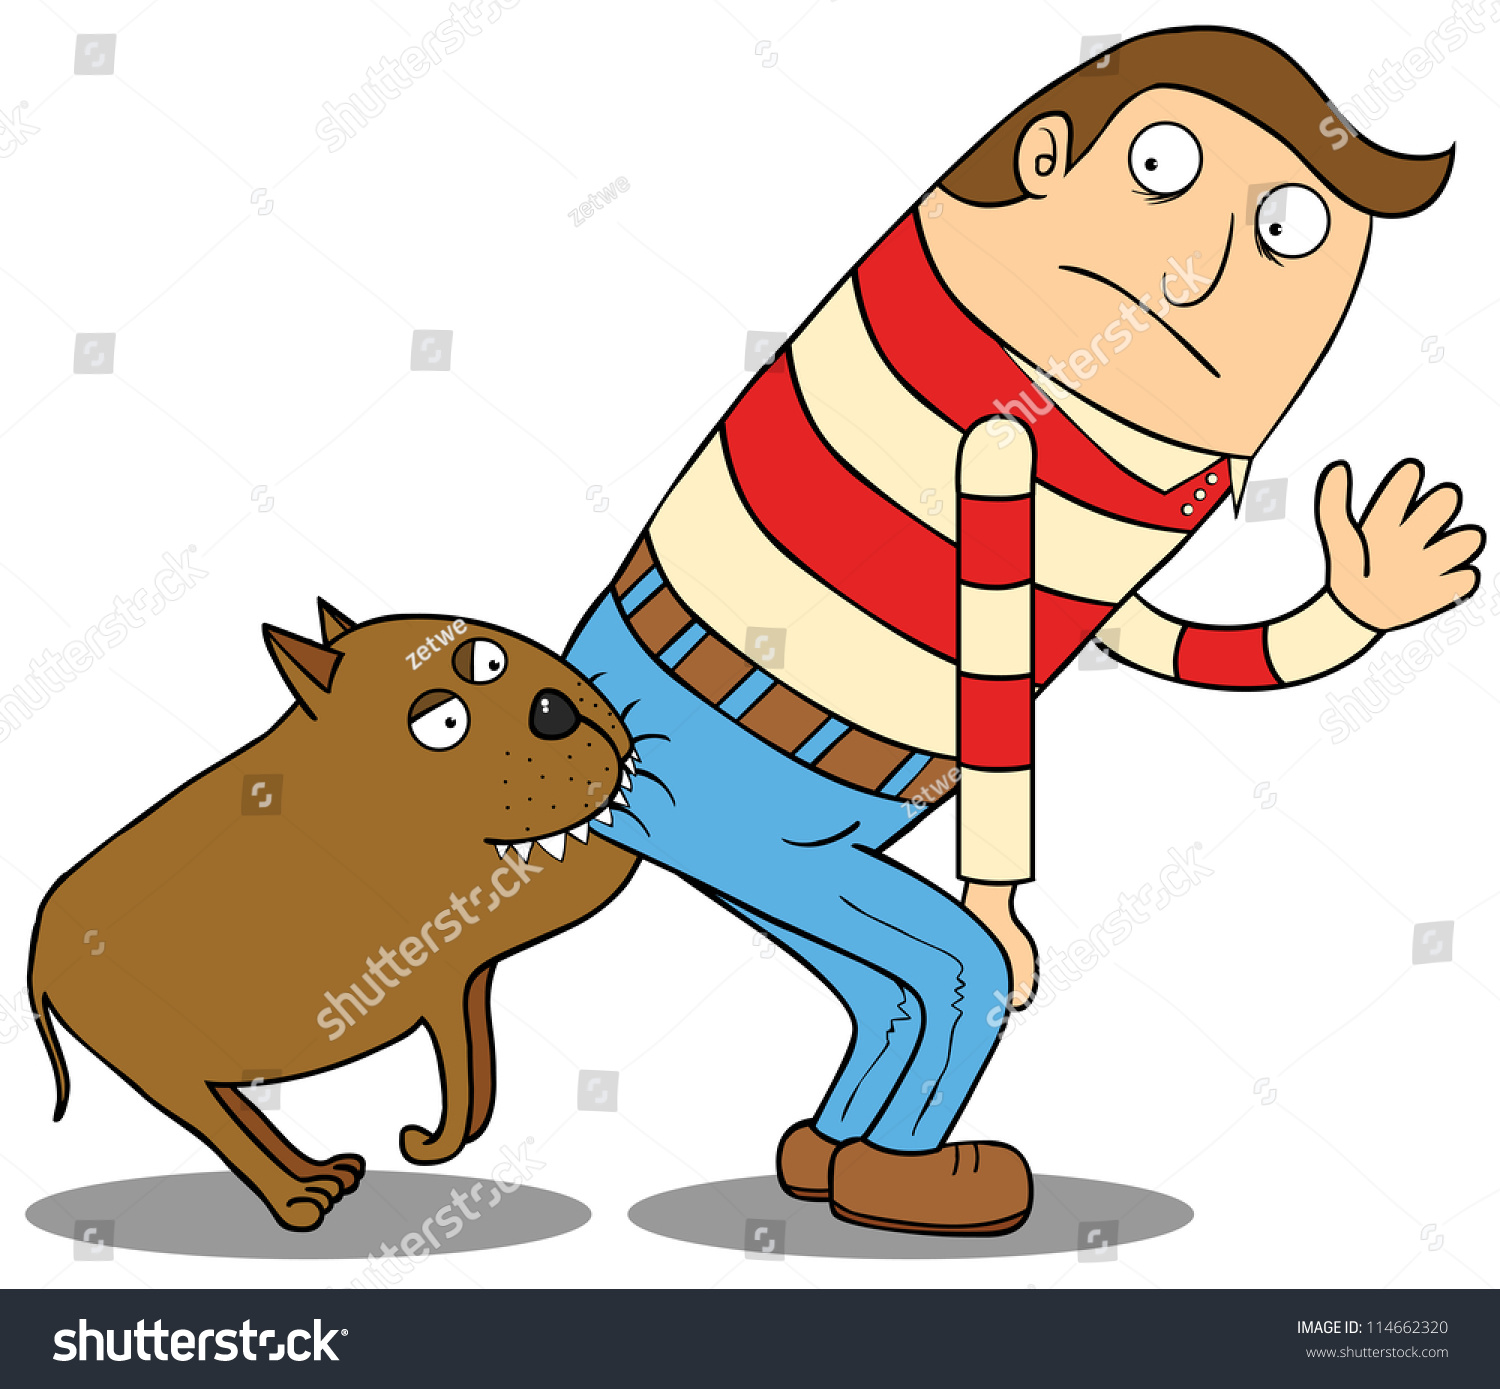 Represent a dog biting a man butt.